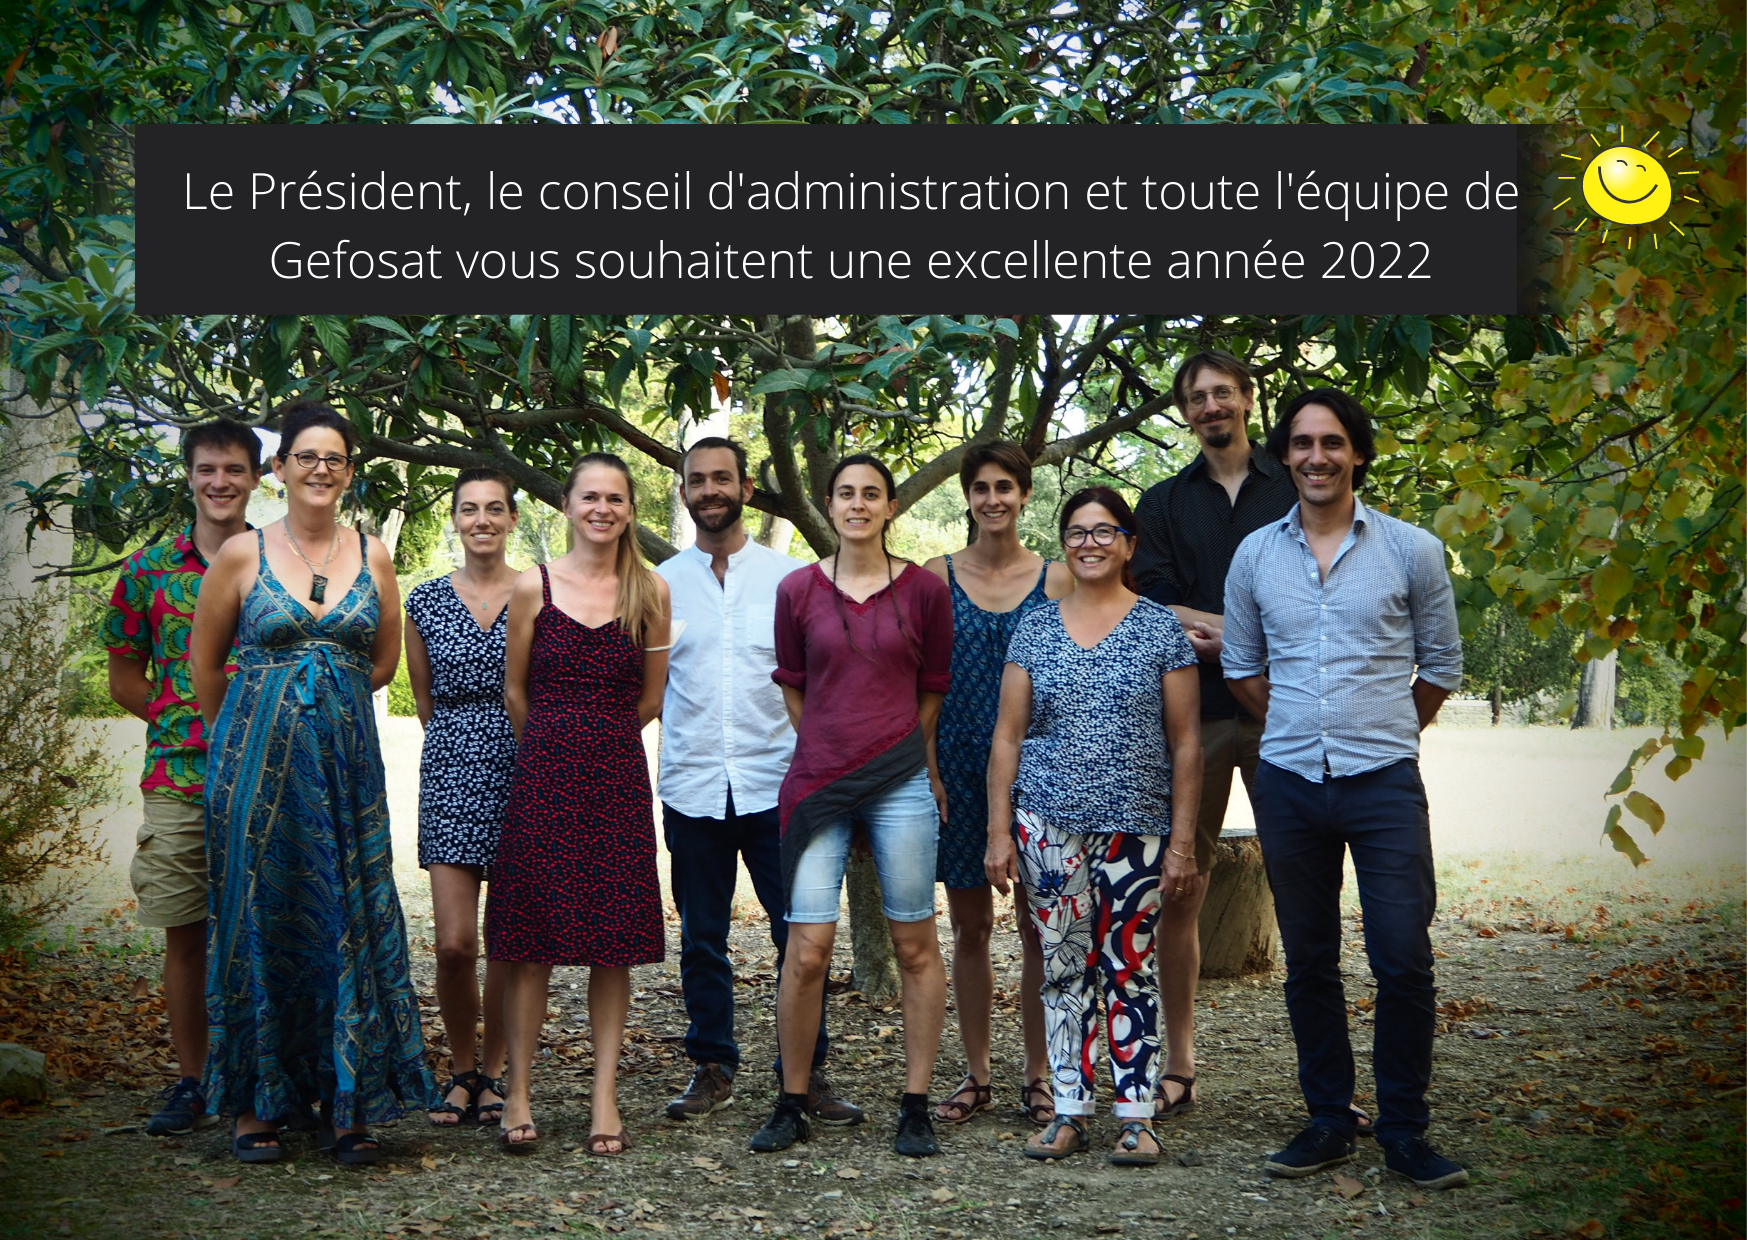 Toute l’équipe de Gefosat vous souhaite une excellente année 2022 !